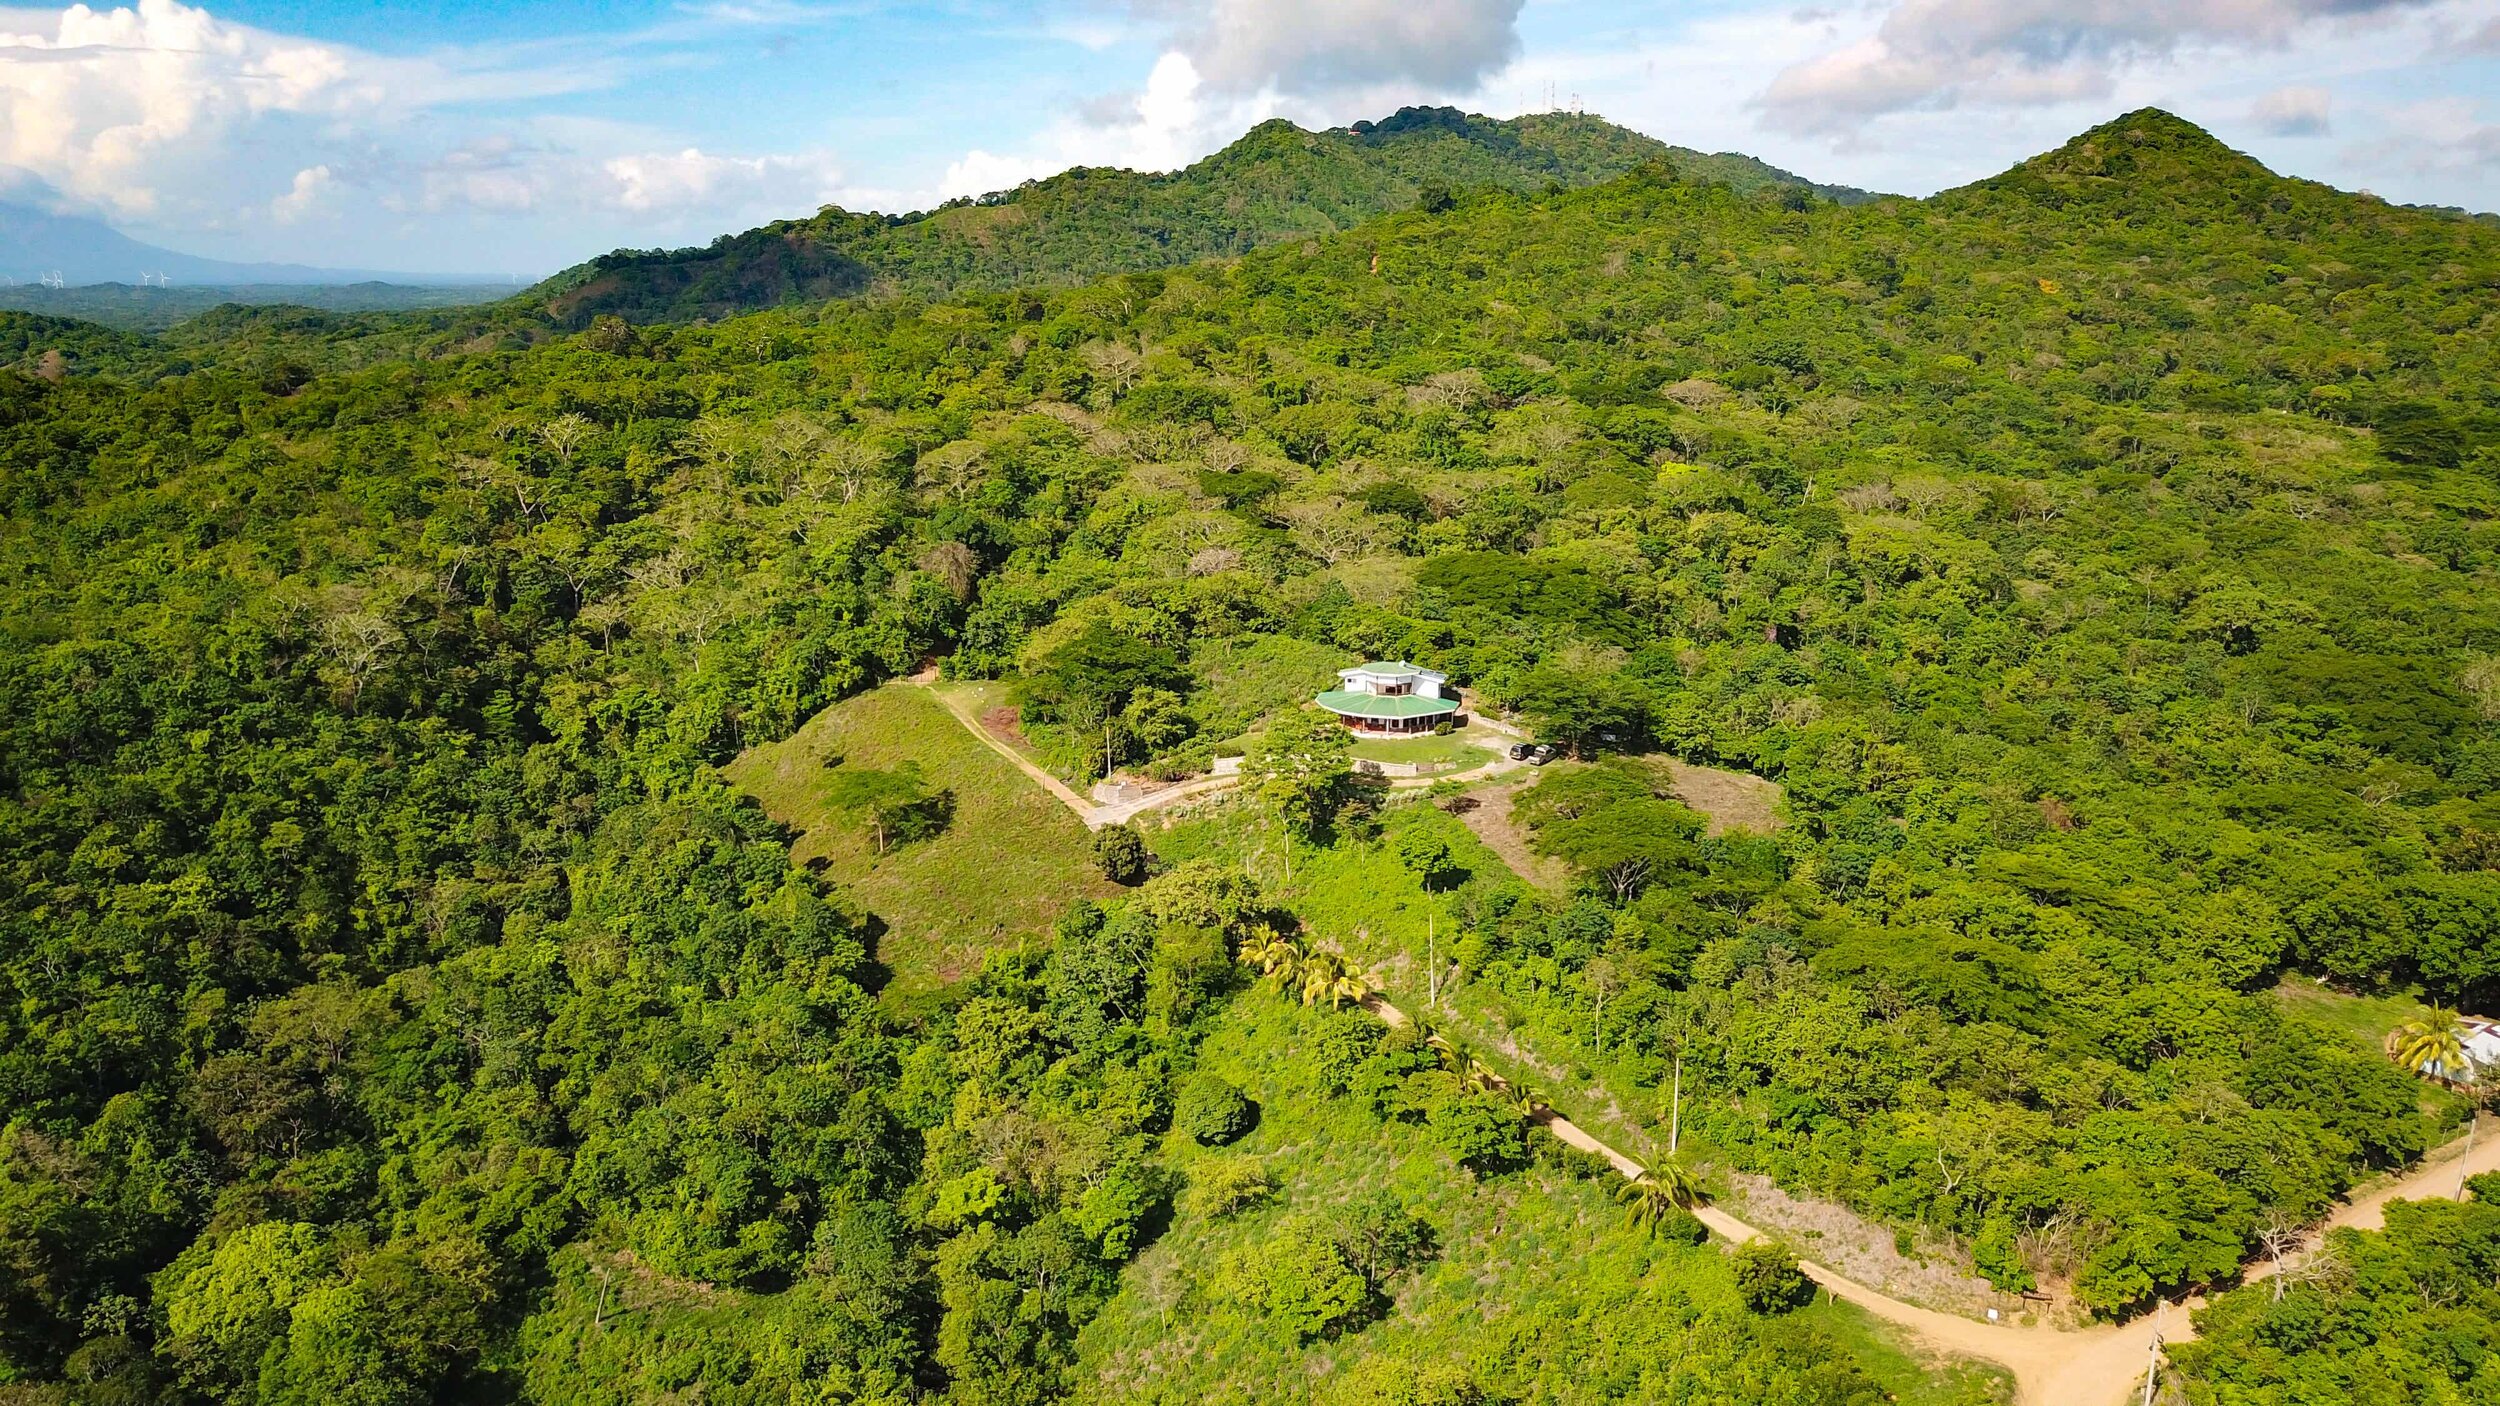 Property for Sale San Juan Del Sur Nicaragua Real Estate 4.JPEG